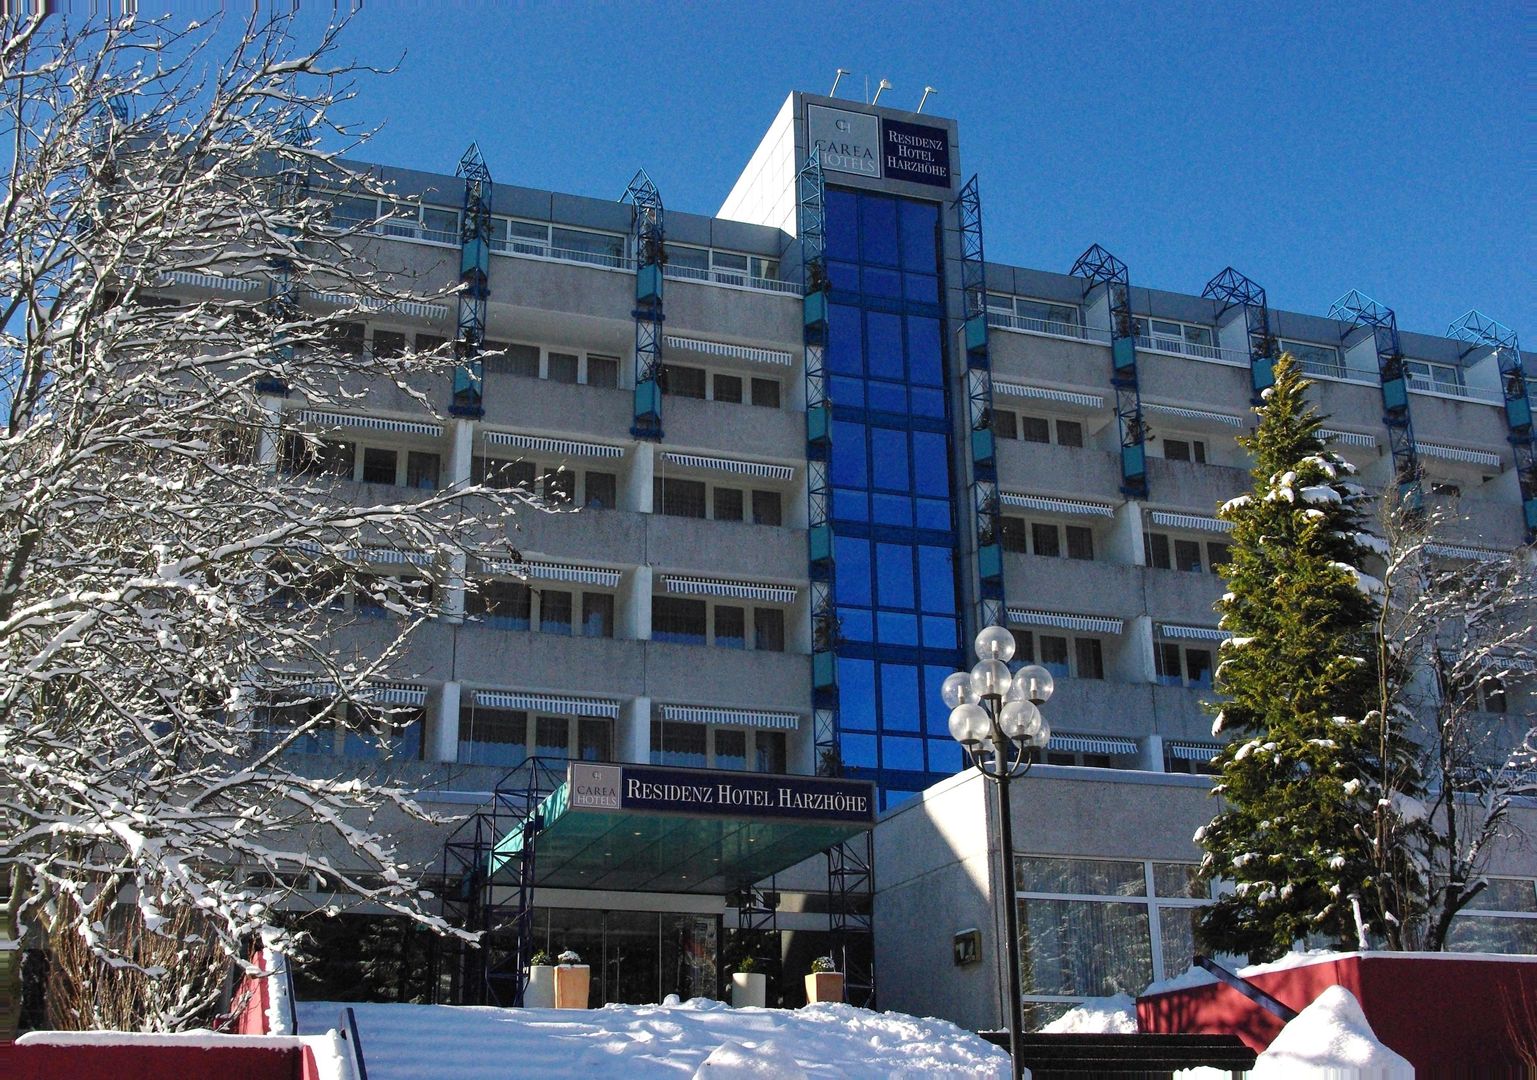 CAREA Residenz Hotel Harzhöhe